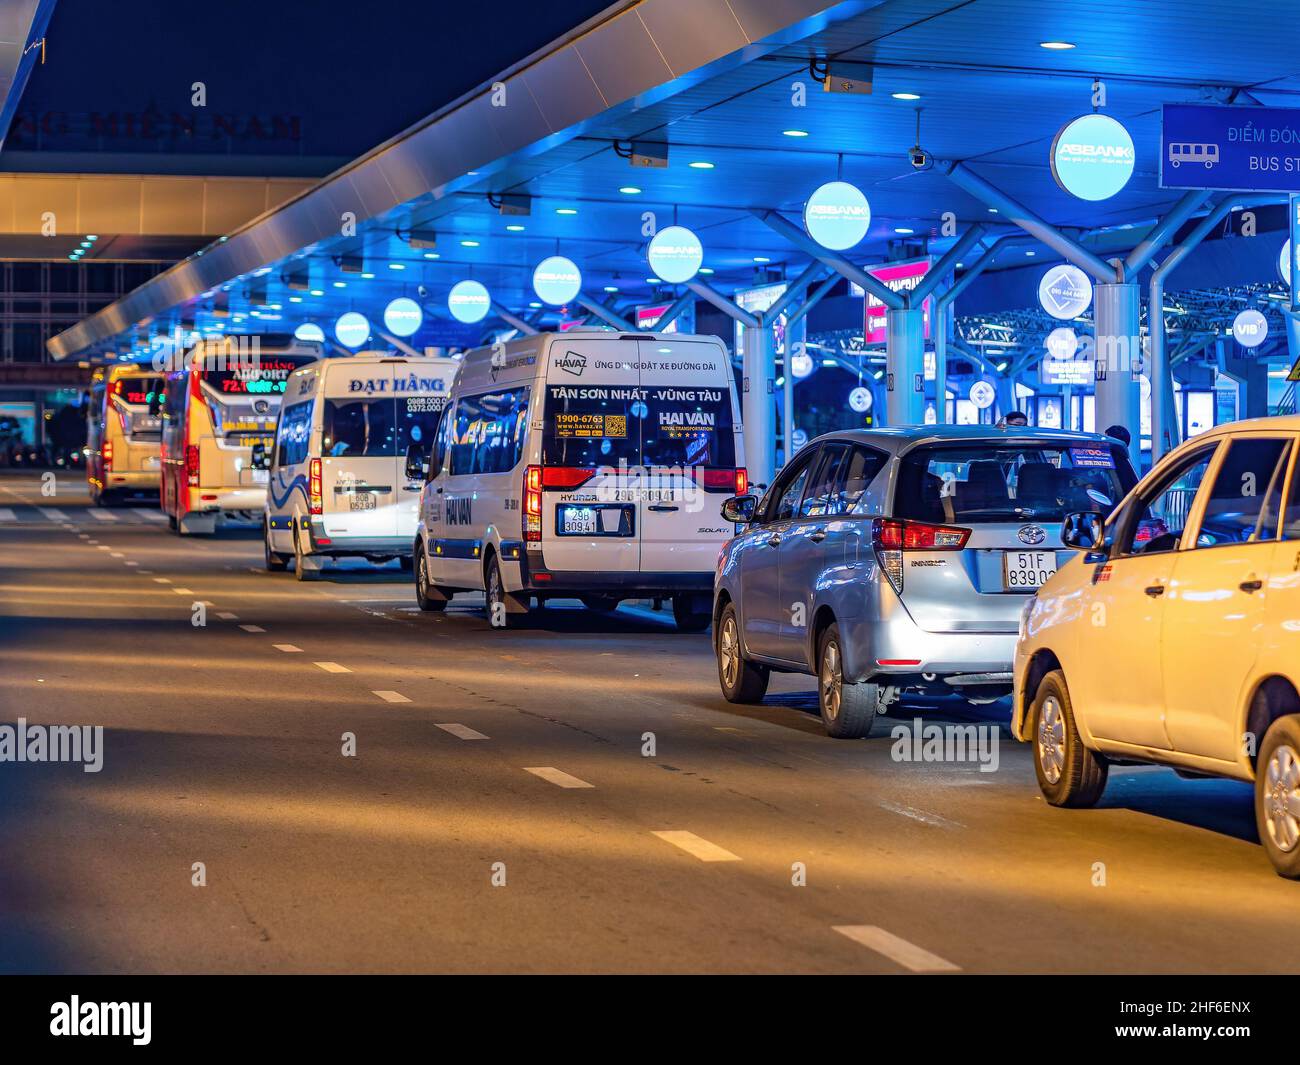 Taxi e autobus in attesa di notte per i passeggeri in arrivo al terminal nazionale dell'aeroporto internazionale Tan Son Nhat a ho Chi Minh City, Vietnam. Foto Stock